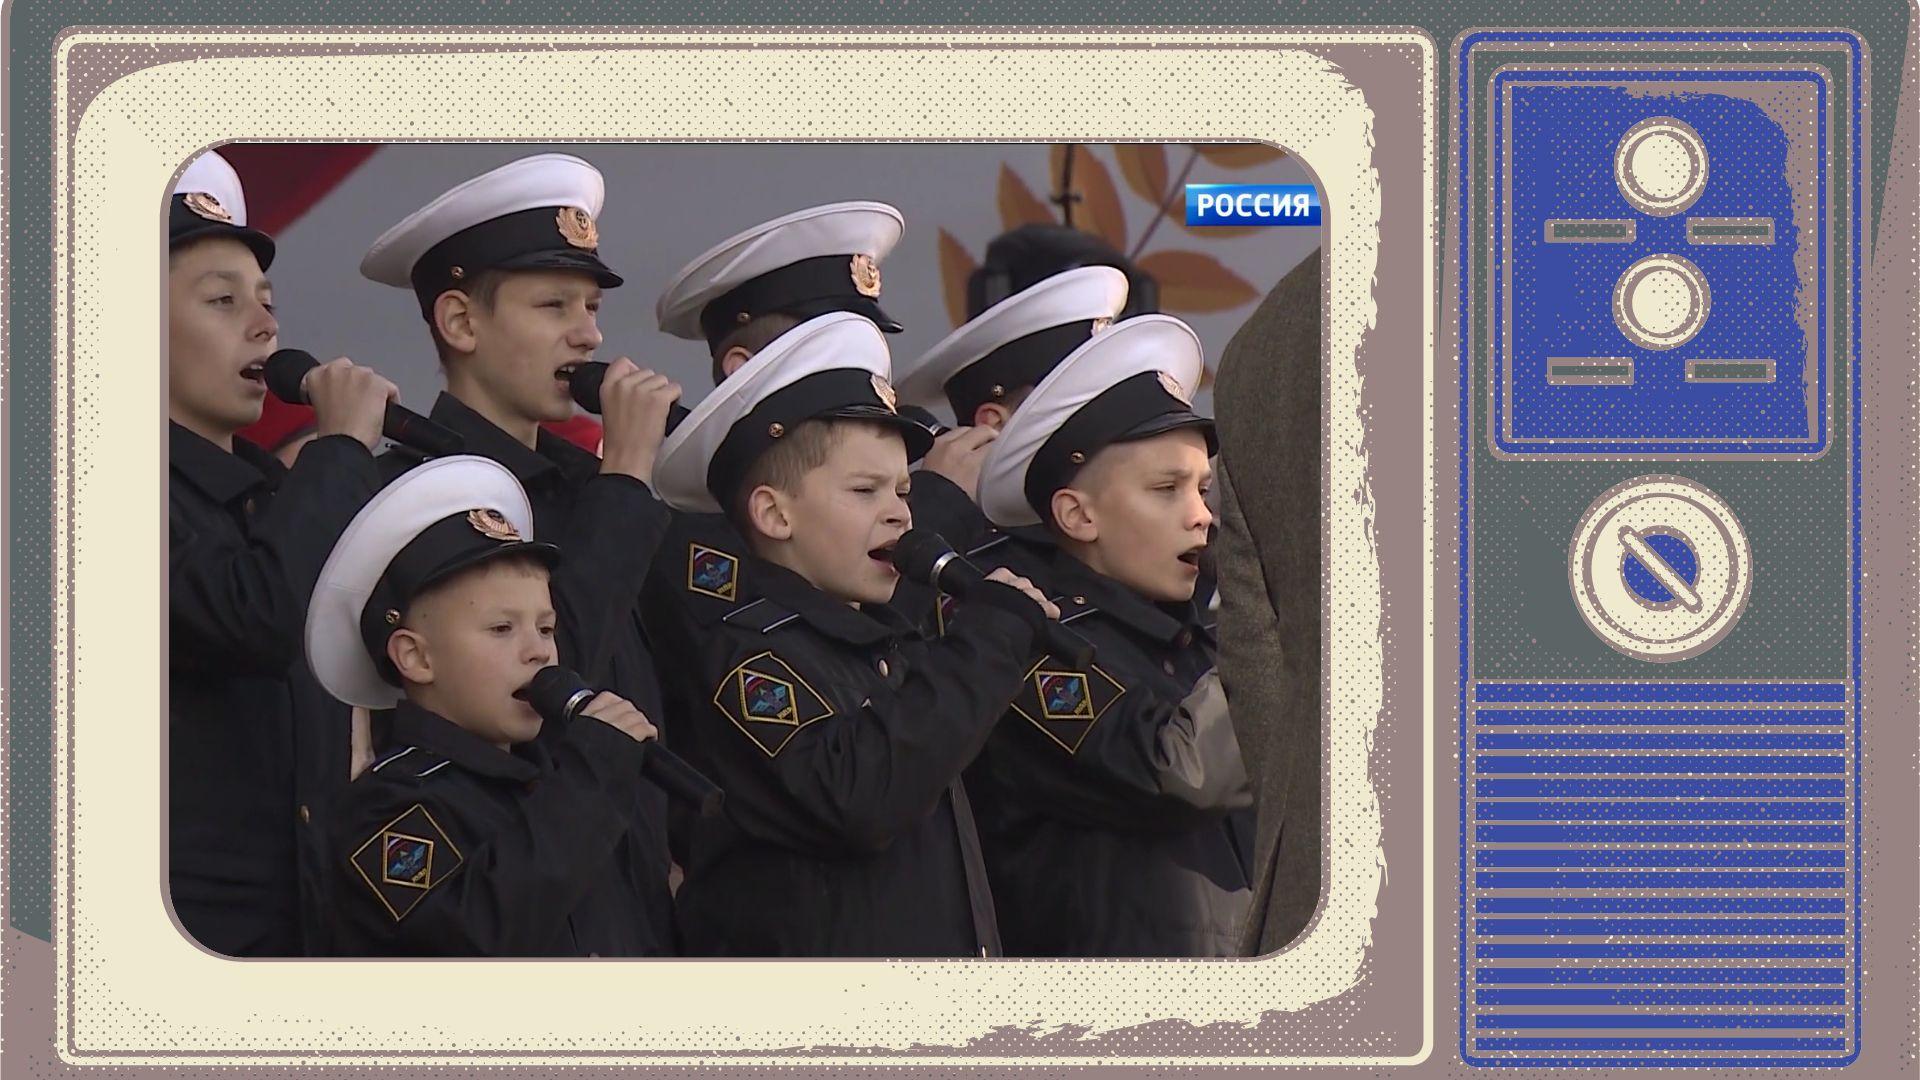 Grafika - w ramce starego telewizora screen przedstawiający dzieci w mundurach wojskowych śpiewające hymn Rosji